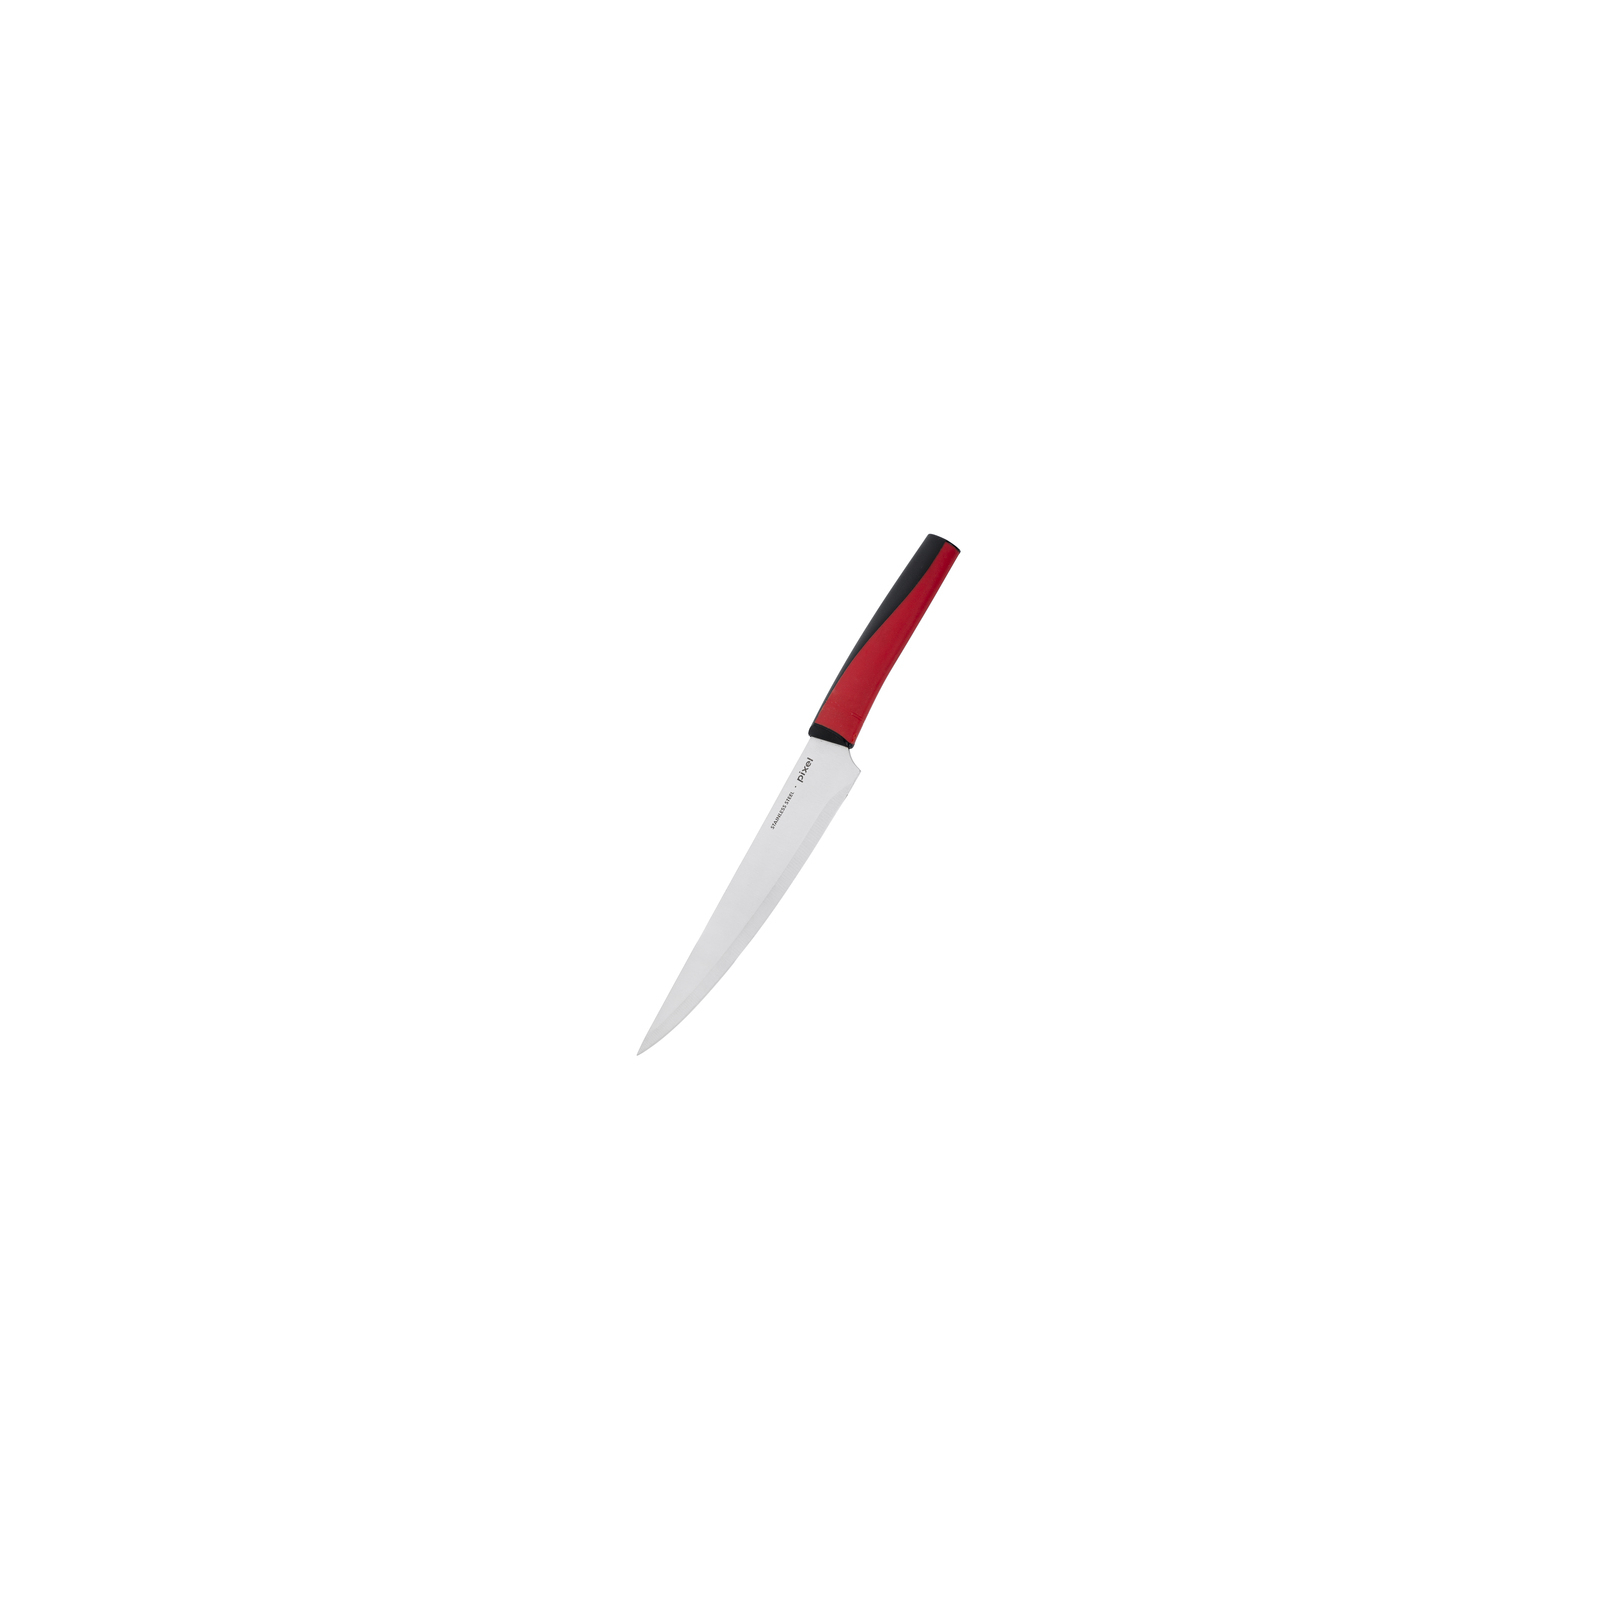 Кухонный нож Pixel поварской 20 см (PX-11000-4)